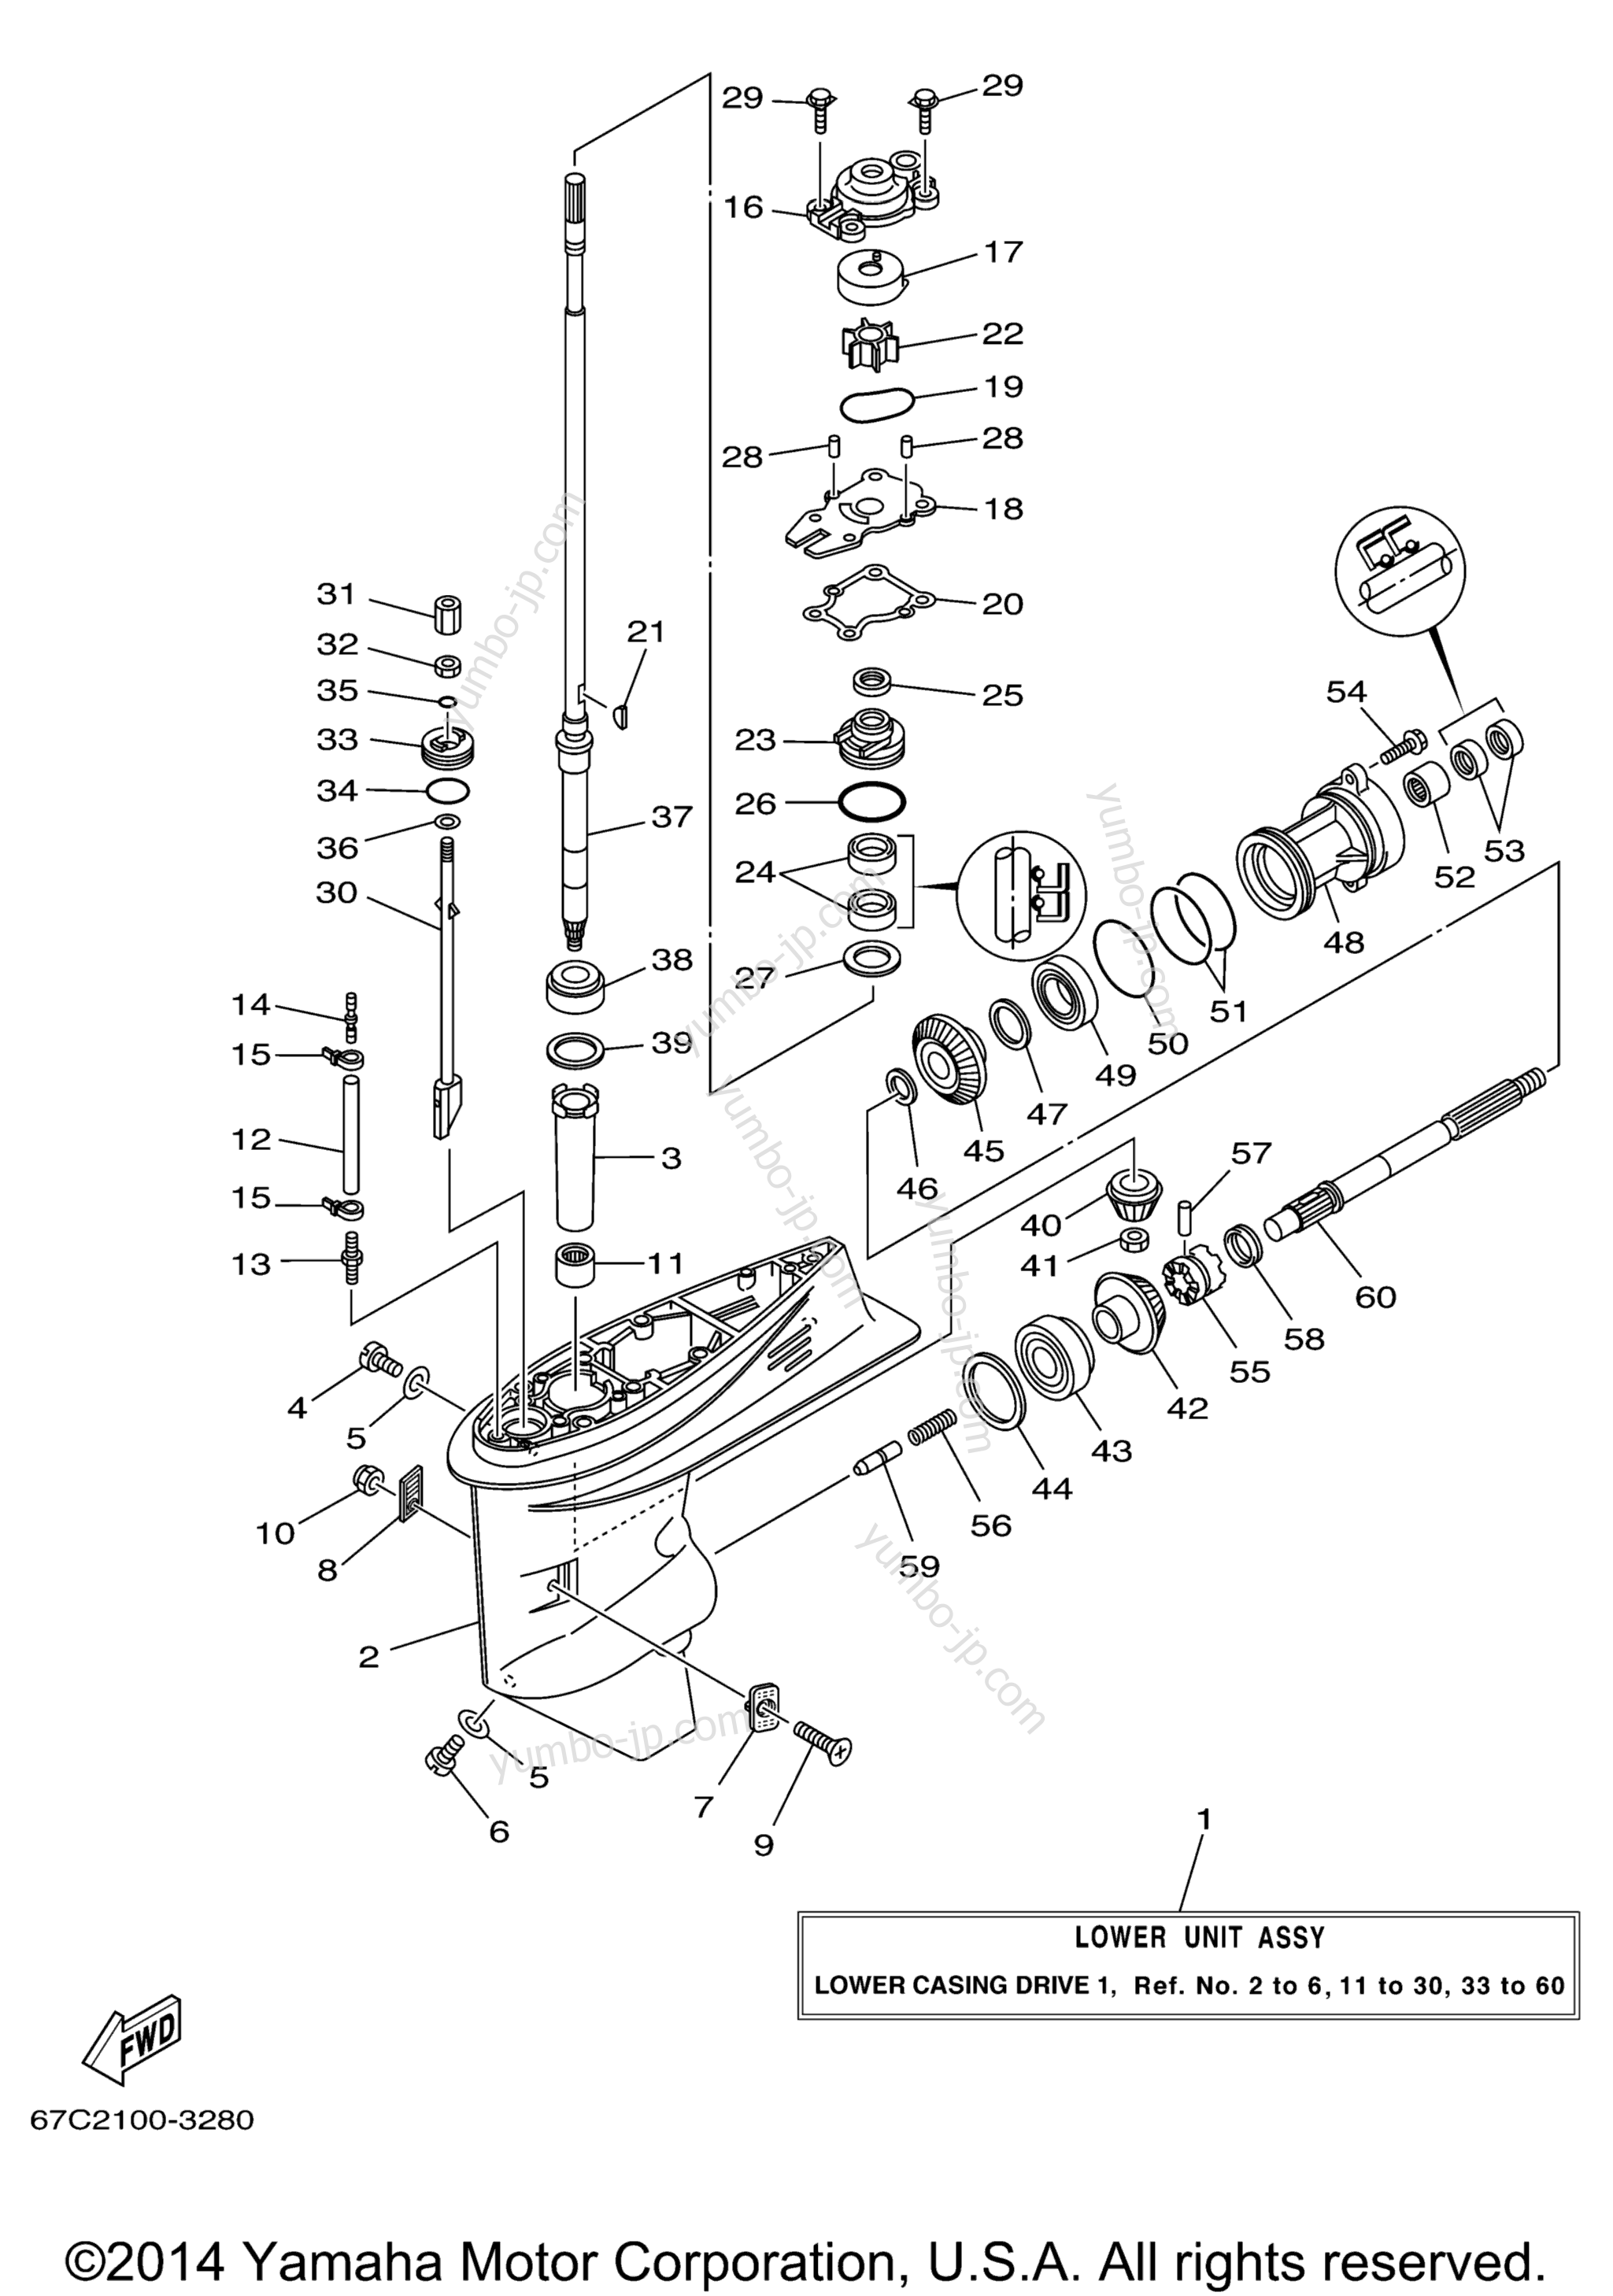 Lower Casing Drive 1 для лодочных моторов YAMAHA F40TLRD_MSHD_MLHD_MJHD_ELRD (F40TLRD) 2005 г.